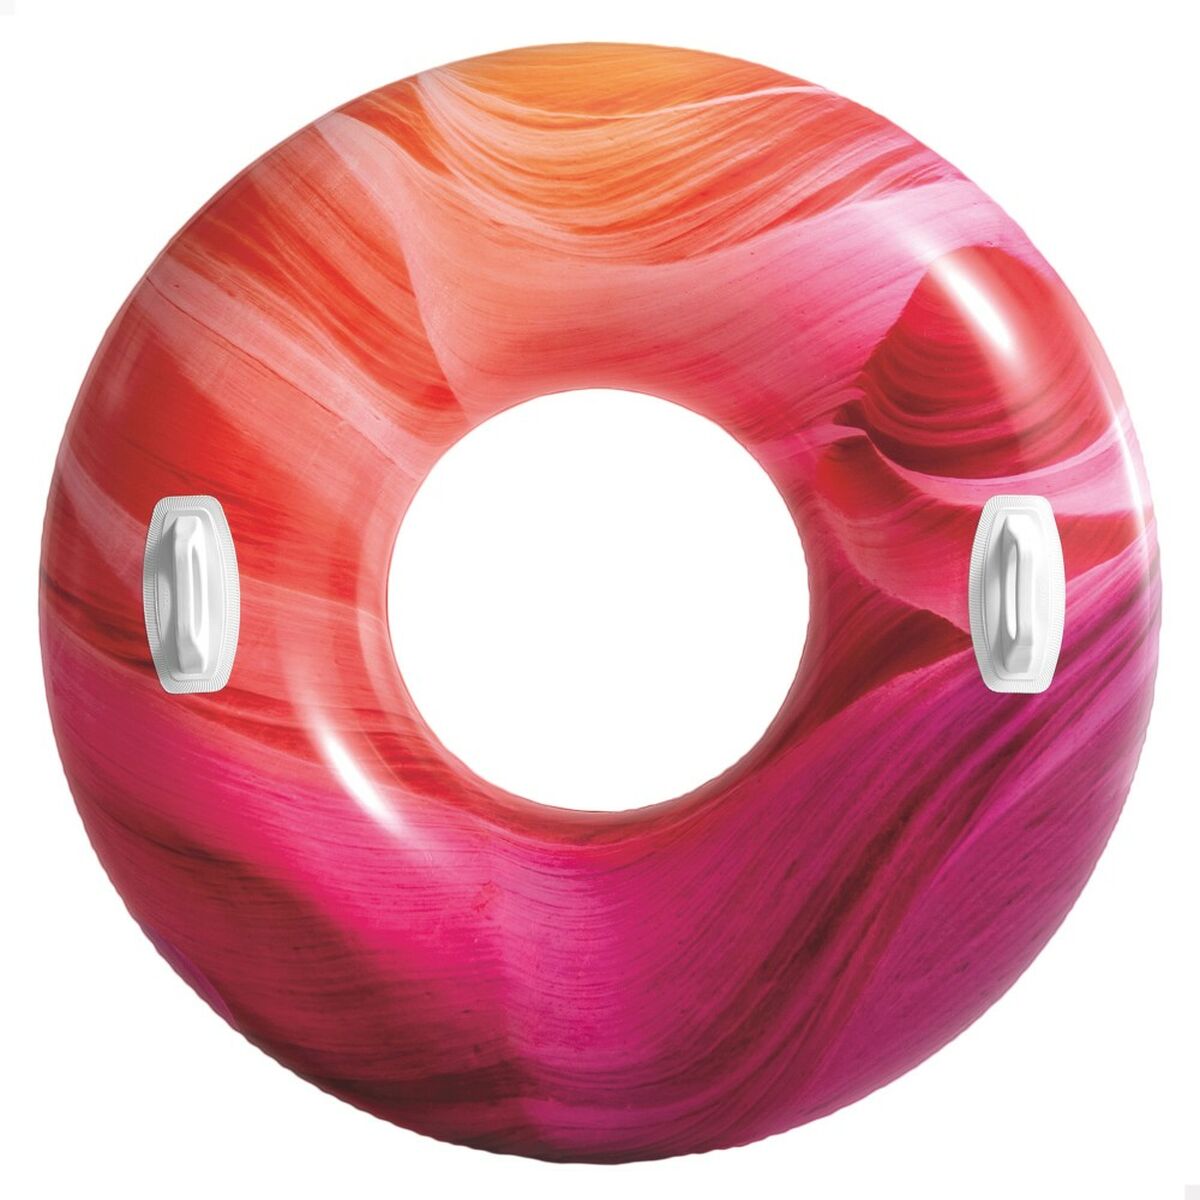 Salvagente Gonfiabile Intex Con manici  91 cm Multicolore - Disponibile in 3-4 giorni lavorativi